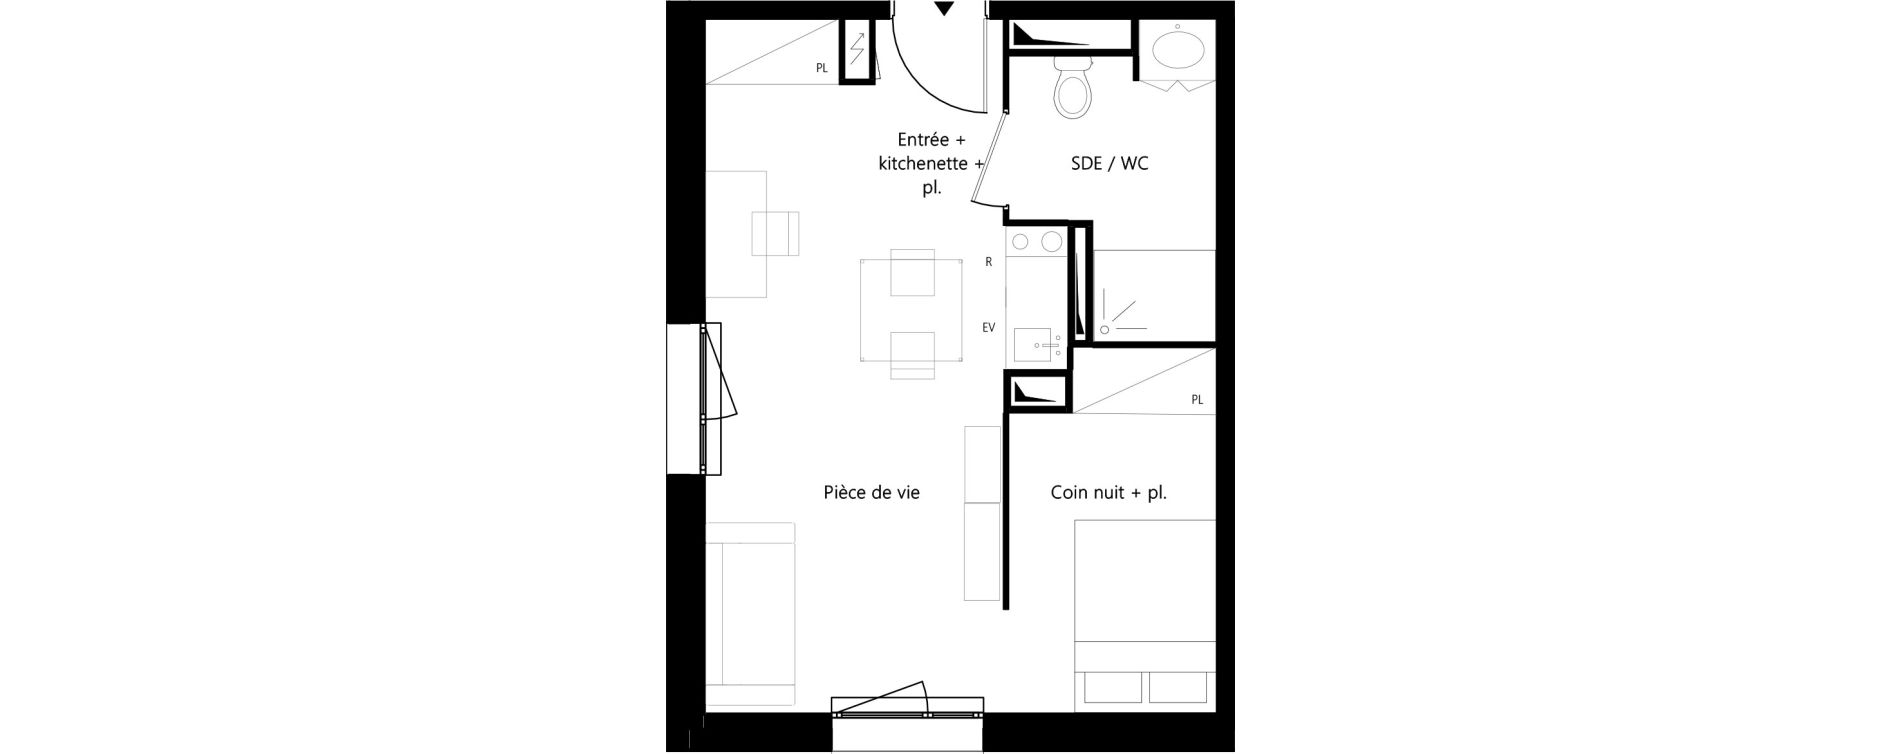 Appartement T1 meubl&eacute; de 32,89 m2 &agrave; Montauban Villebourbon - gare